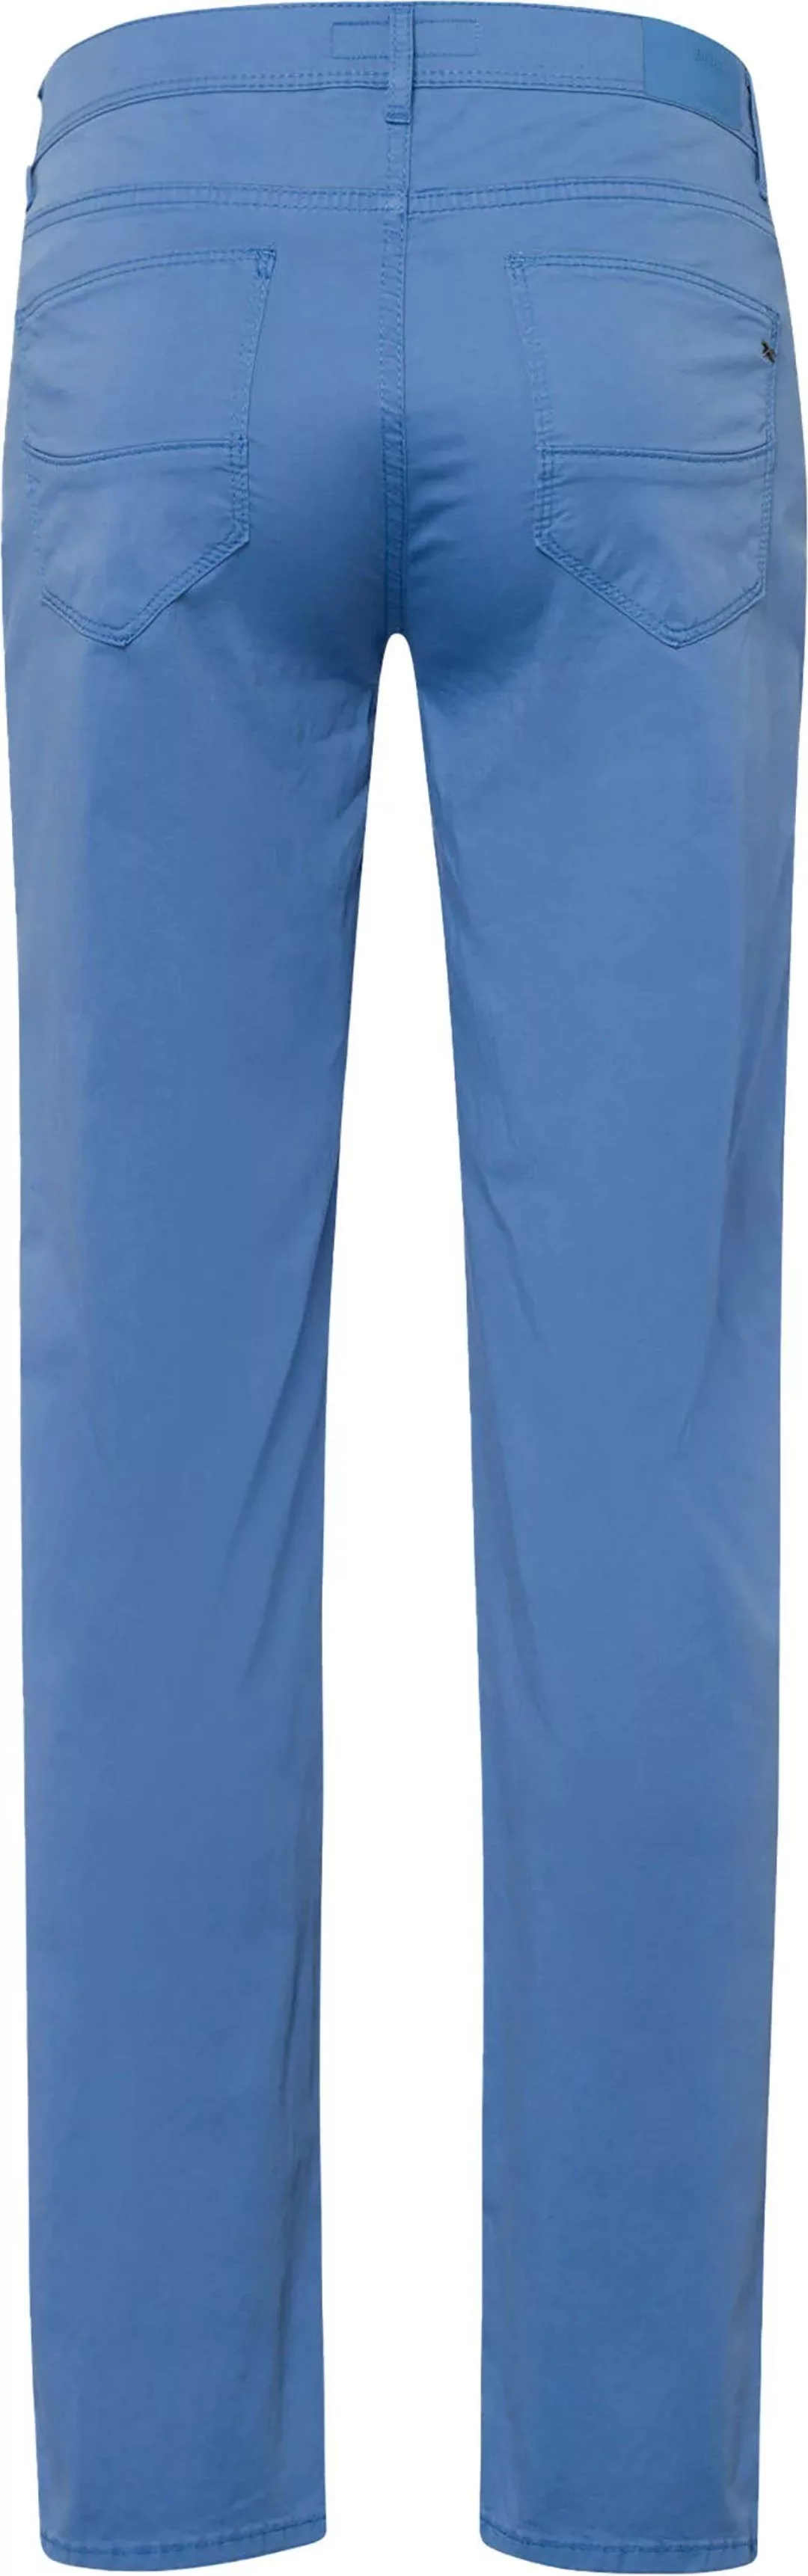 Brax Cadiz Hose Blau - Größe W 35 - L 32 günstig online kaufen